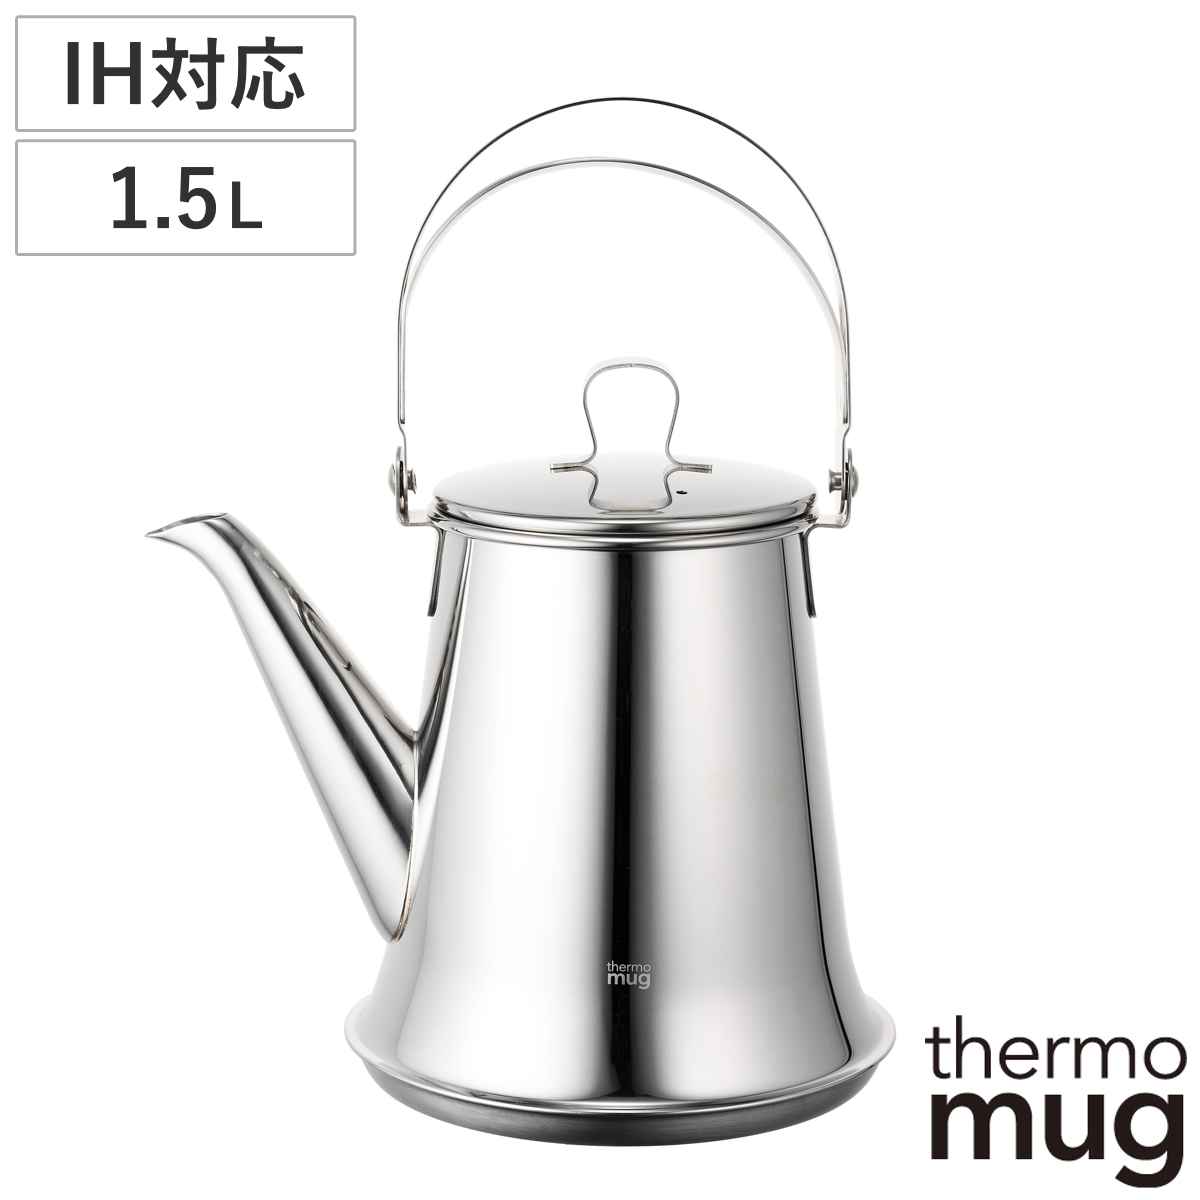 サーモマグ ケトル 1.5L thermo mug x TSUBAME 日本製 （ IH対応 ガス火対応 やかん ステンレスケトル ドリップポット ヤカン 湯沸かしケ